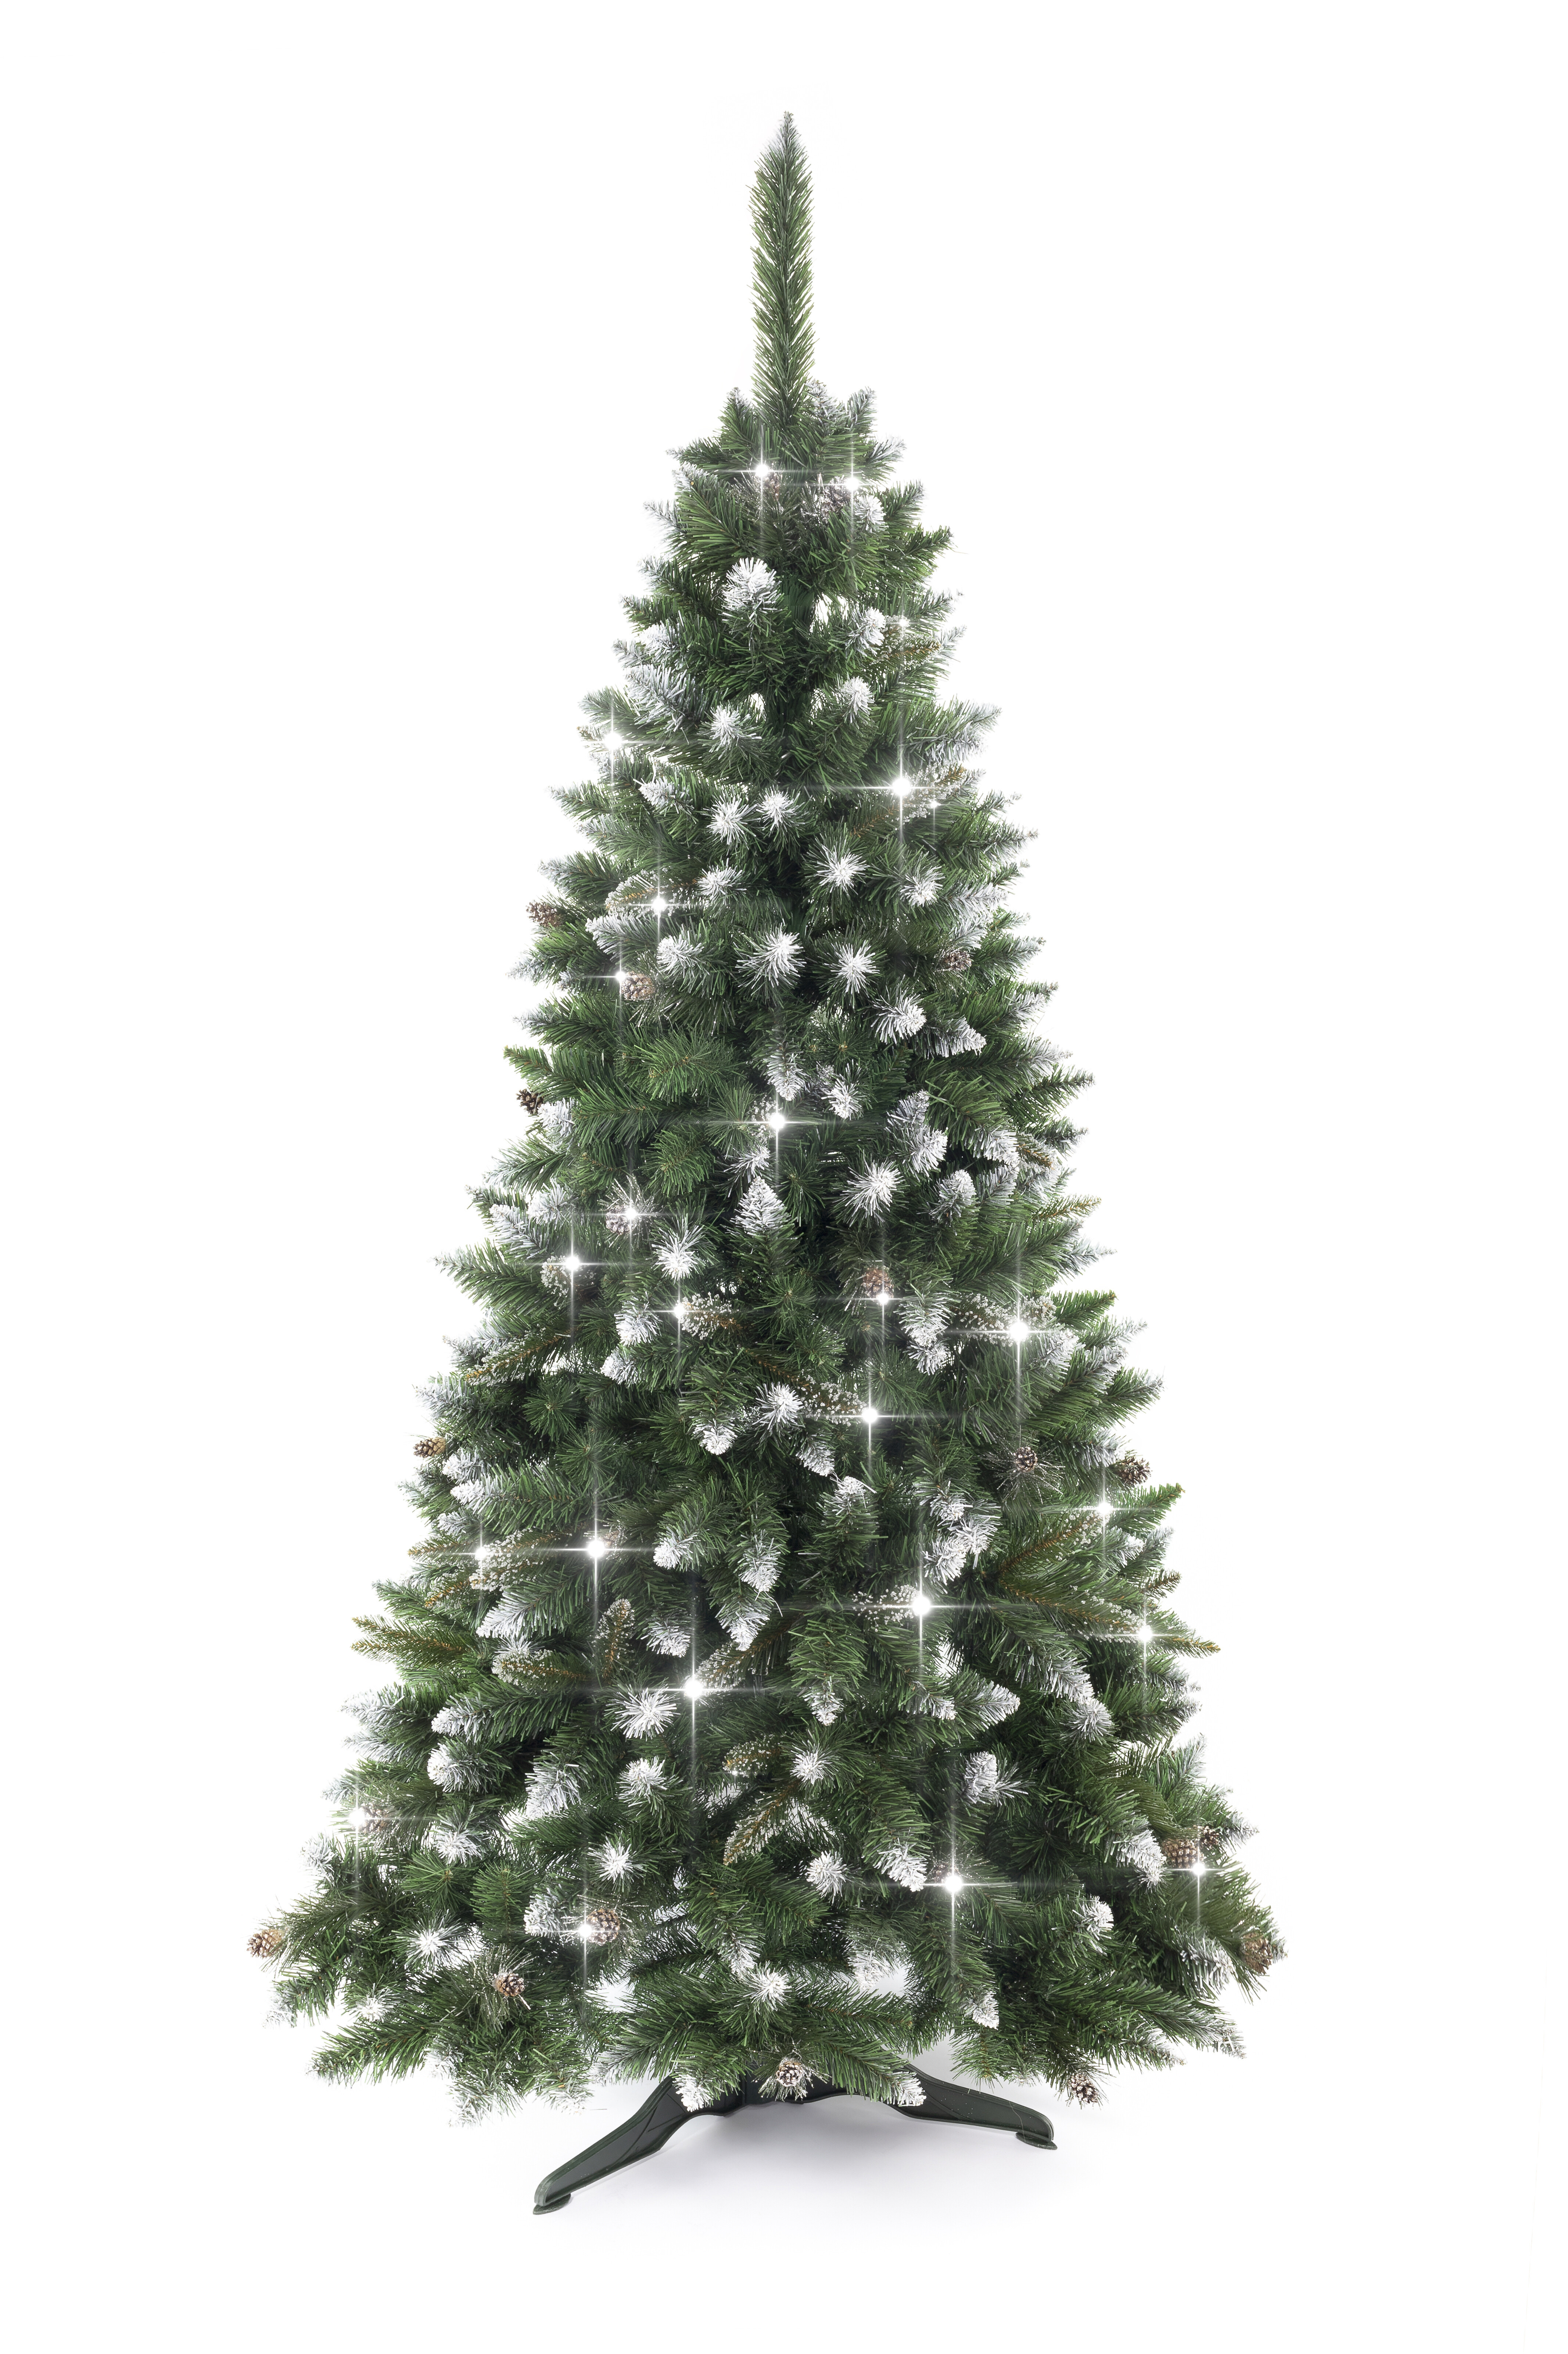 Aga Vianočný stromček Borovica 150 cm Crystal strieborná